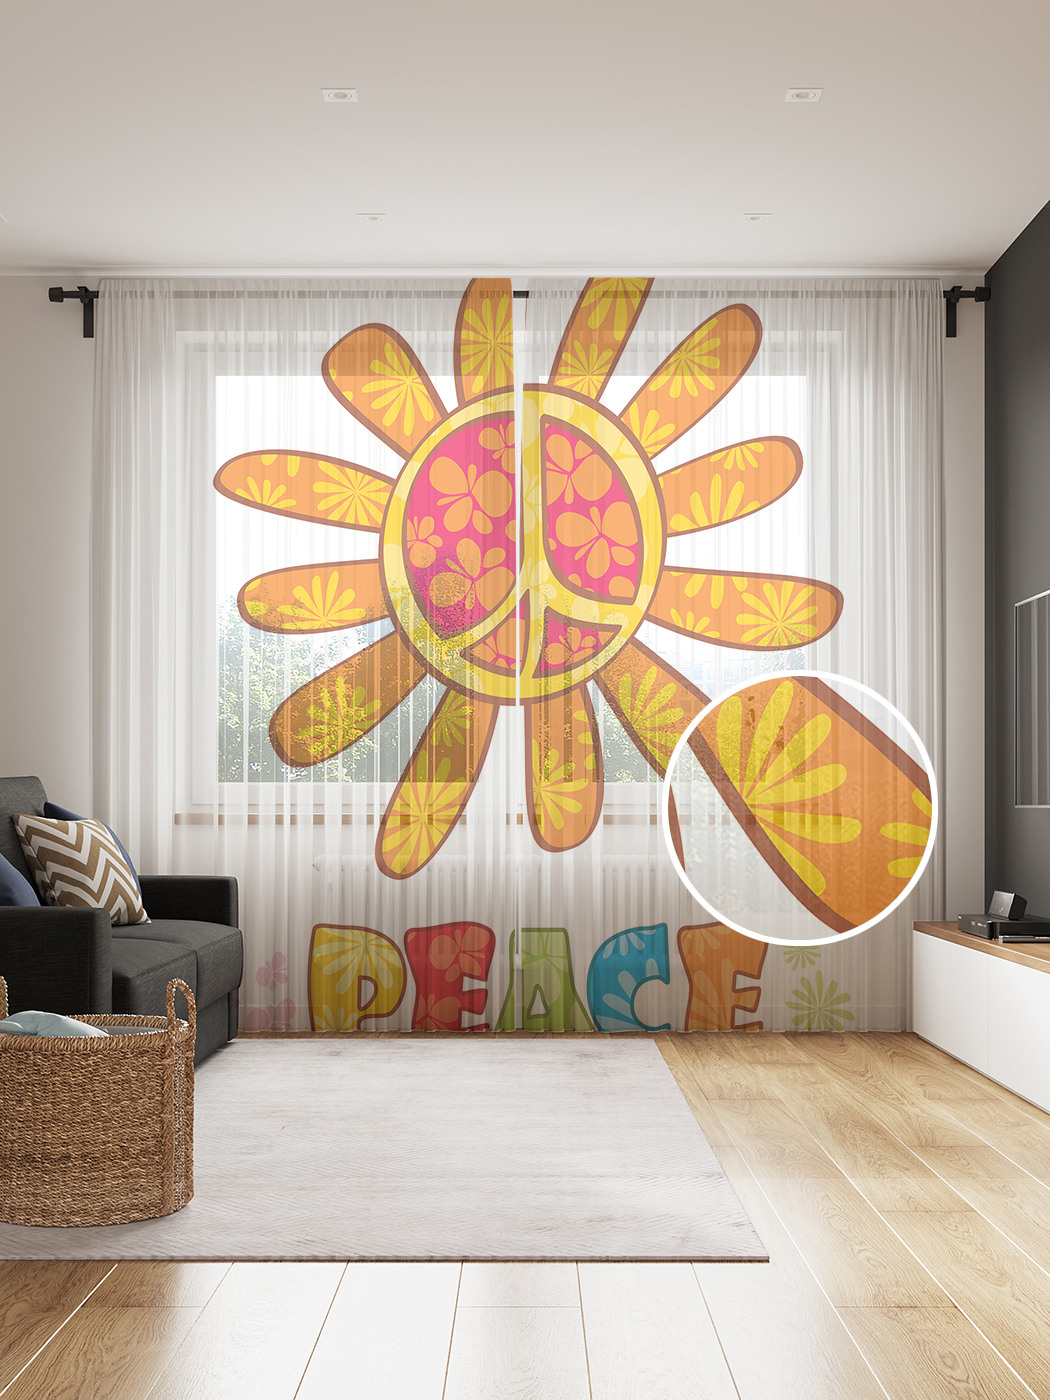 

Фототюль JoyArty "Мирное солнце хиппи", 145x265см, 2 полотна, лента, 50 крючков, Мирное солнце хиппи